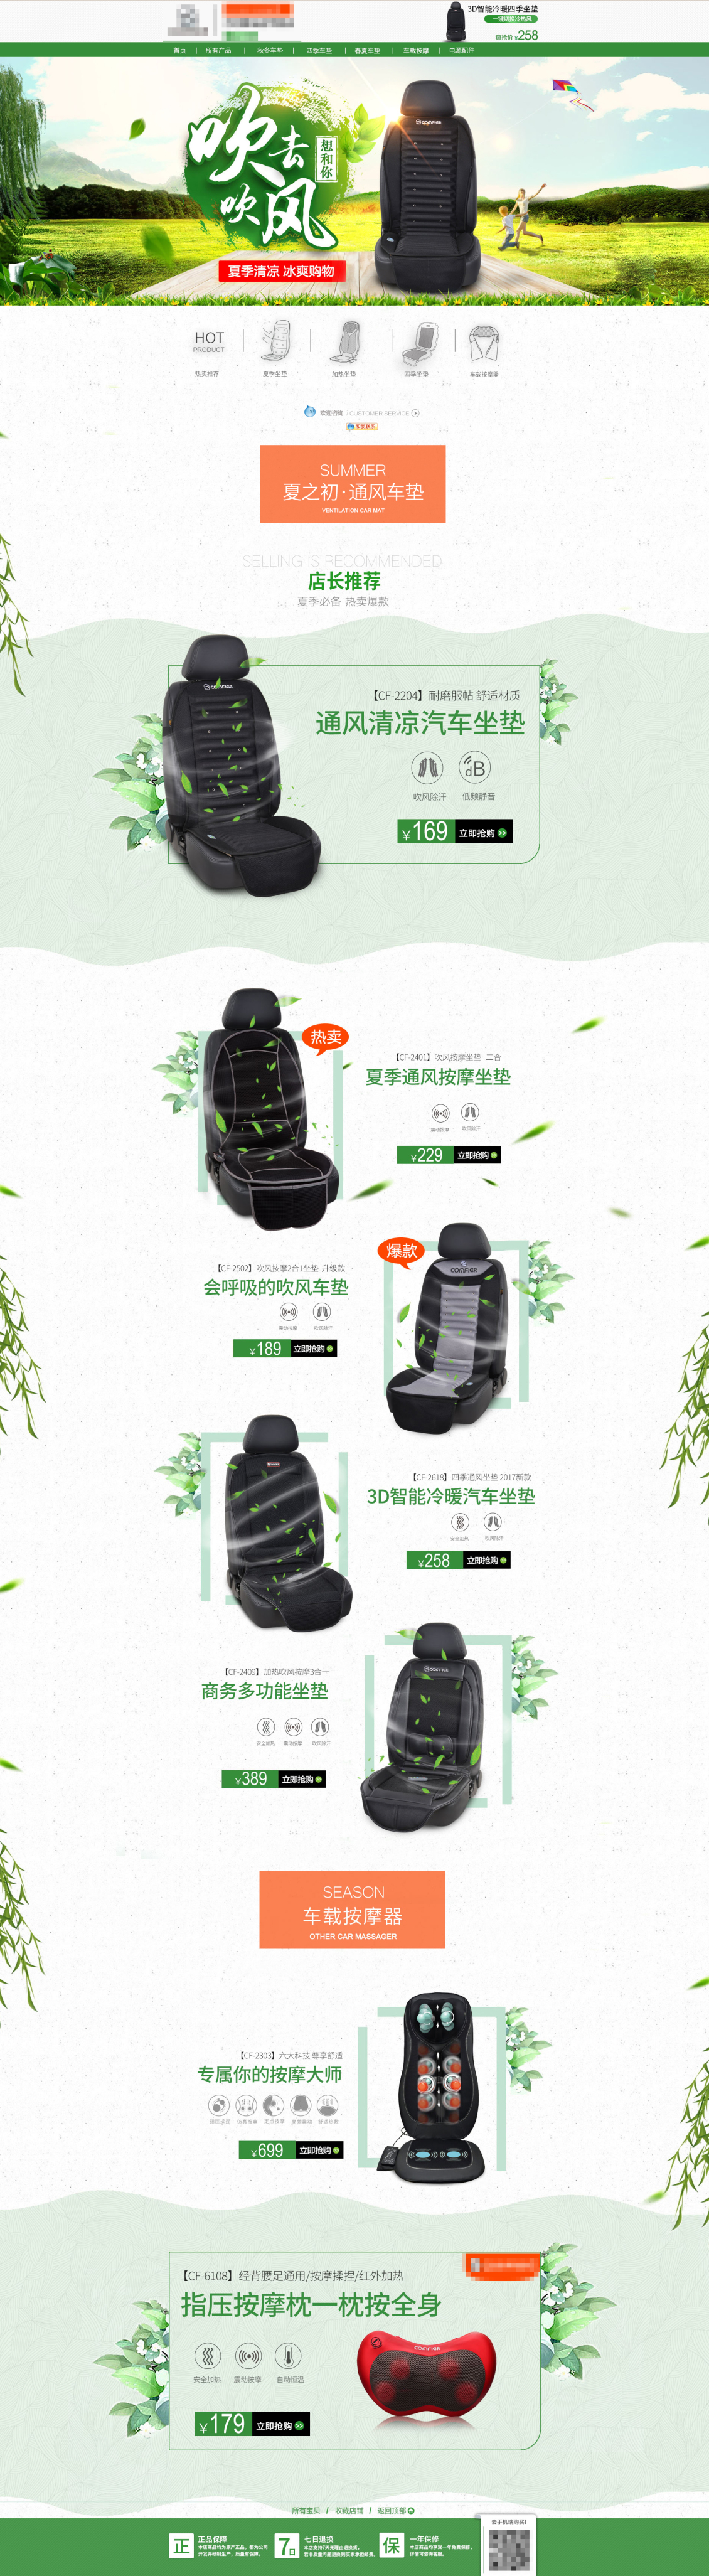 淘宝美工社会人阿峰汽车用品配件坐垫按摩枕商务清新绿色环保作品